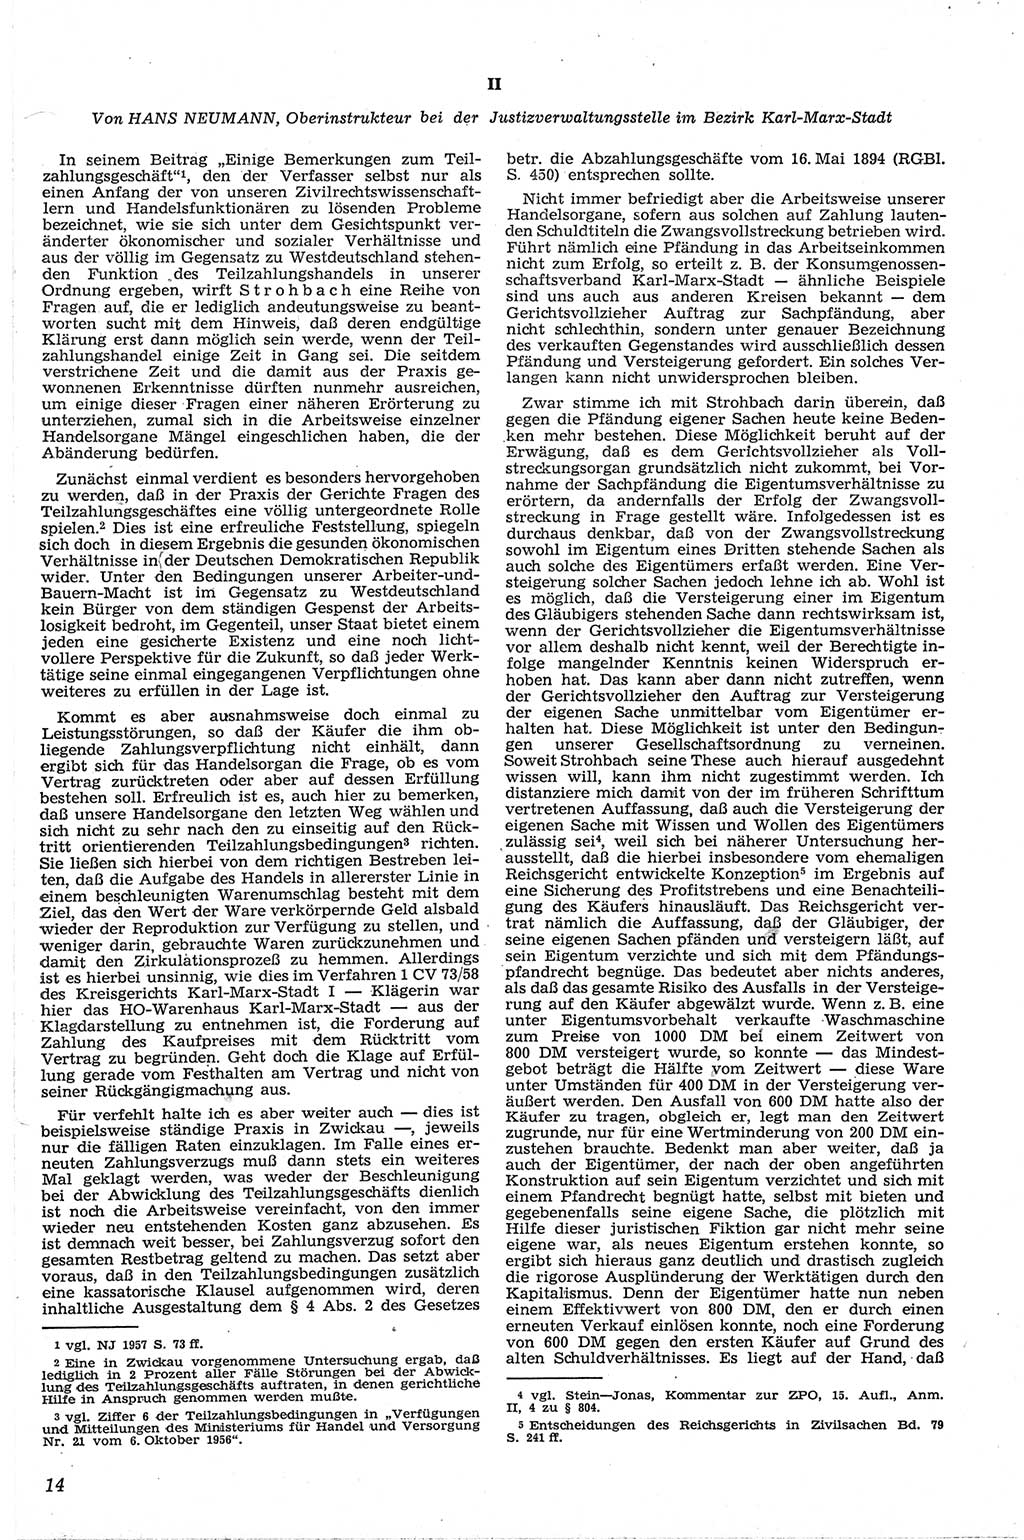 Neue Justiz (NJ), Zeitschrift für Recht und Rechtswissenschaft [Deutsche Demokratische Republik (DDR)], 13. Jahrgang 1959, Seite 14 (NJ DDR 1959, S. 14)